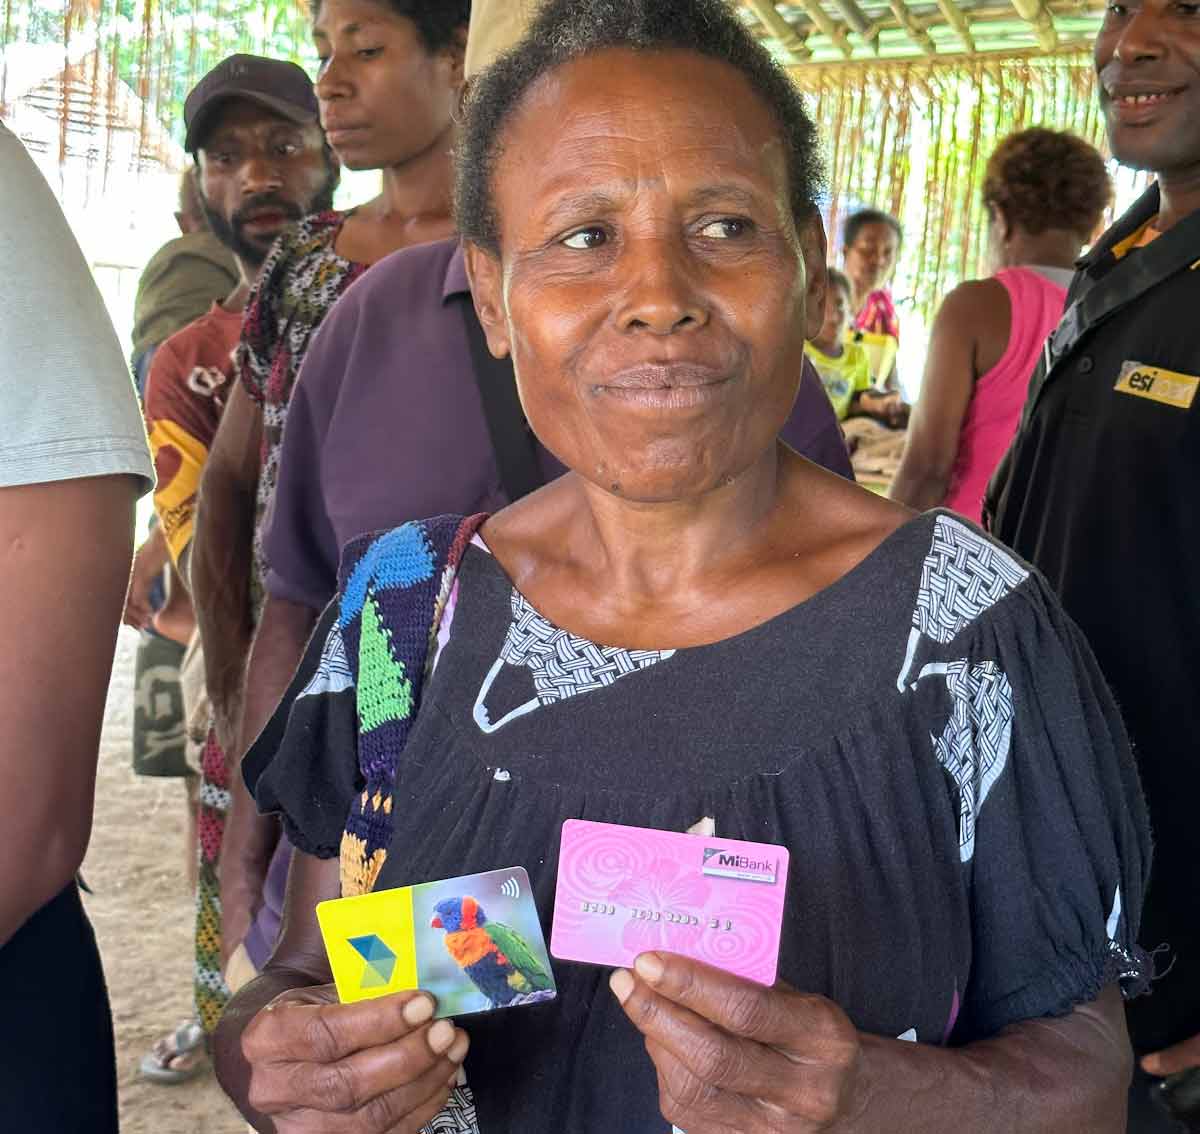 Woman holding a Digizen card